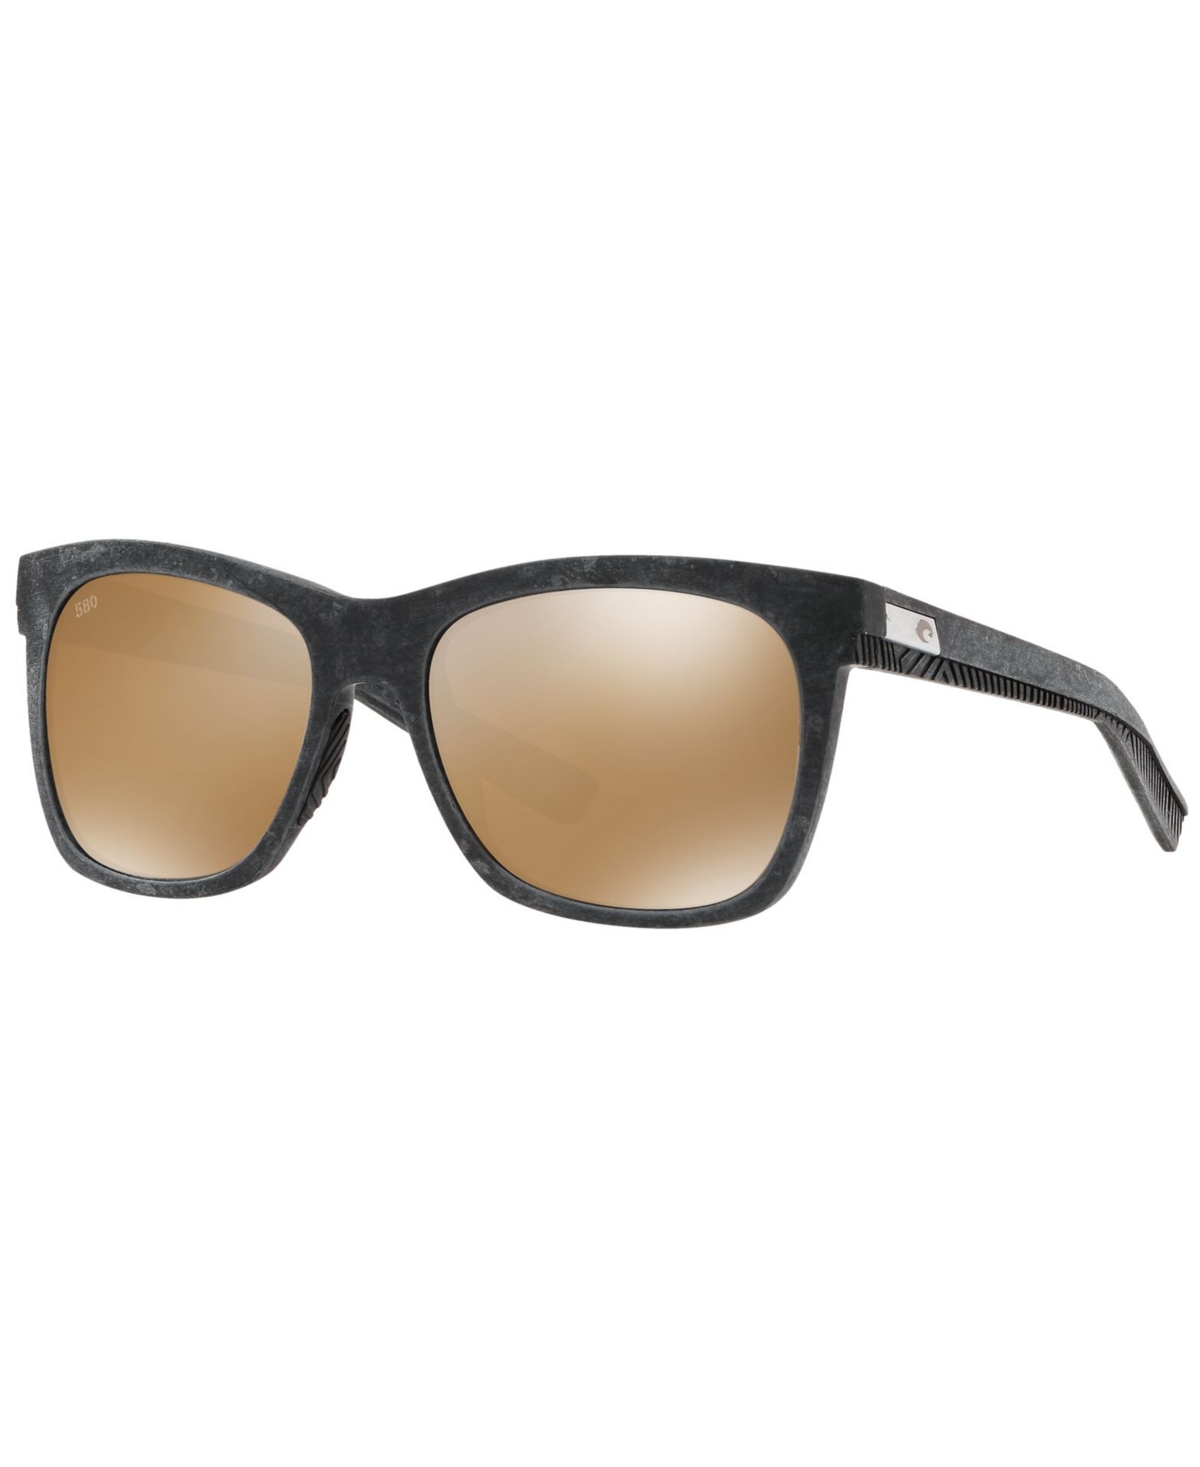 Women's Polarized Sunglasses, Caldera 55 - BLK/COPPER MIR